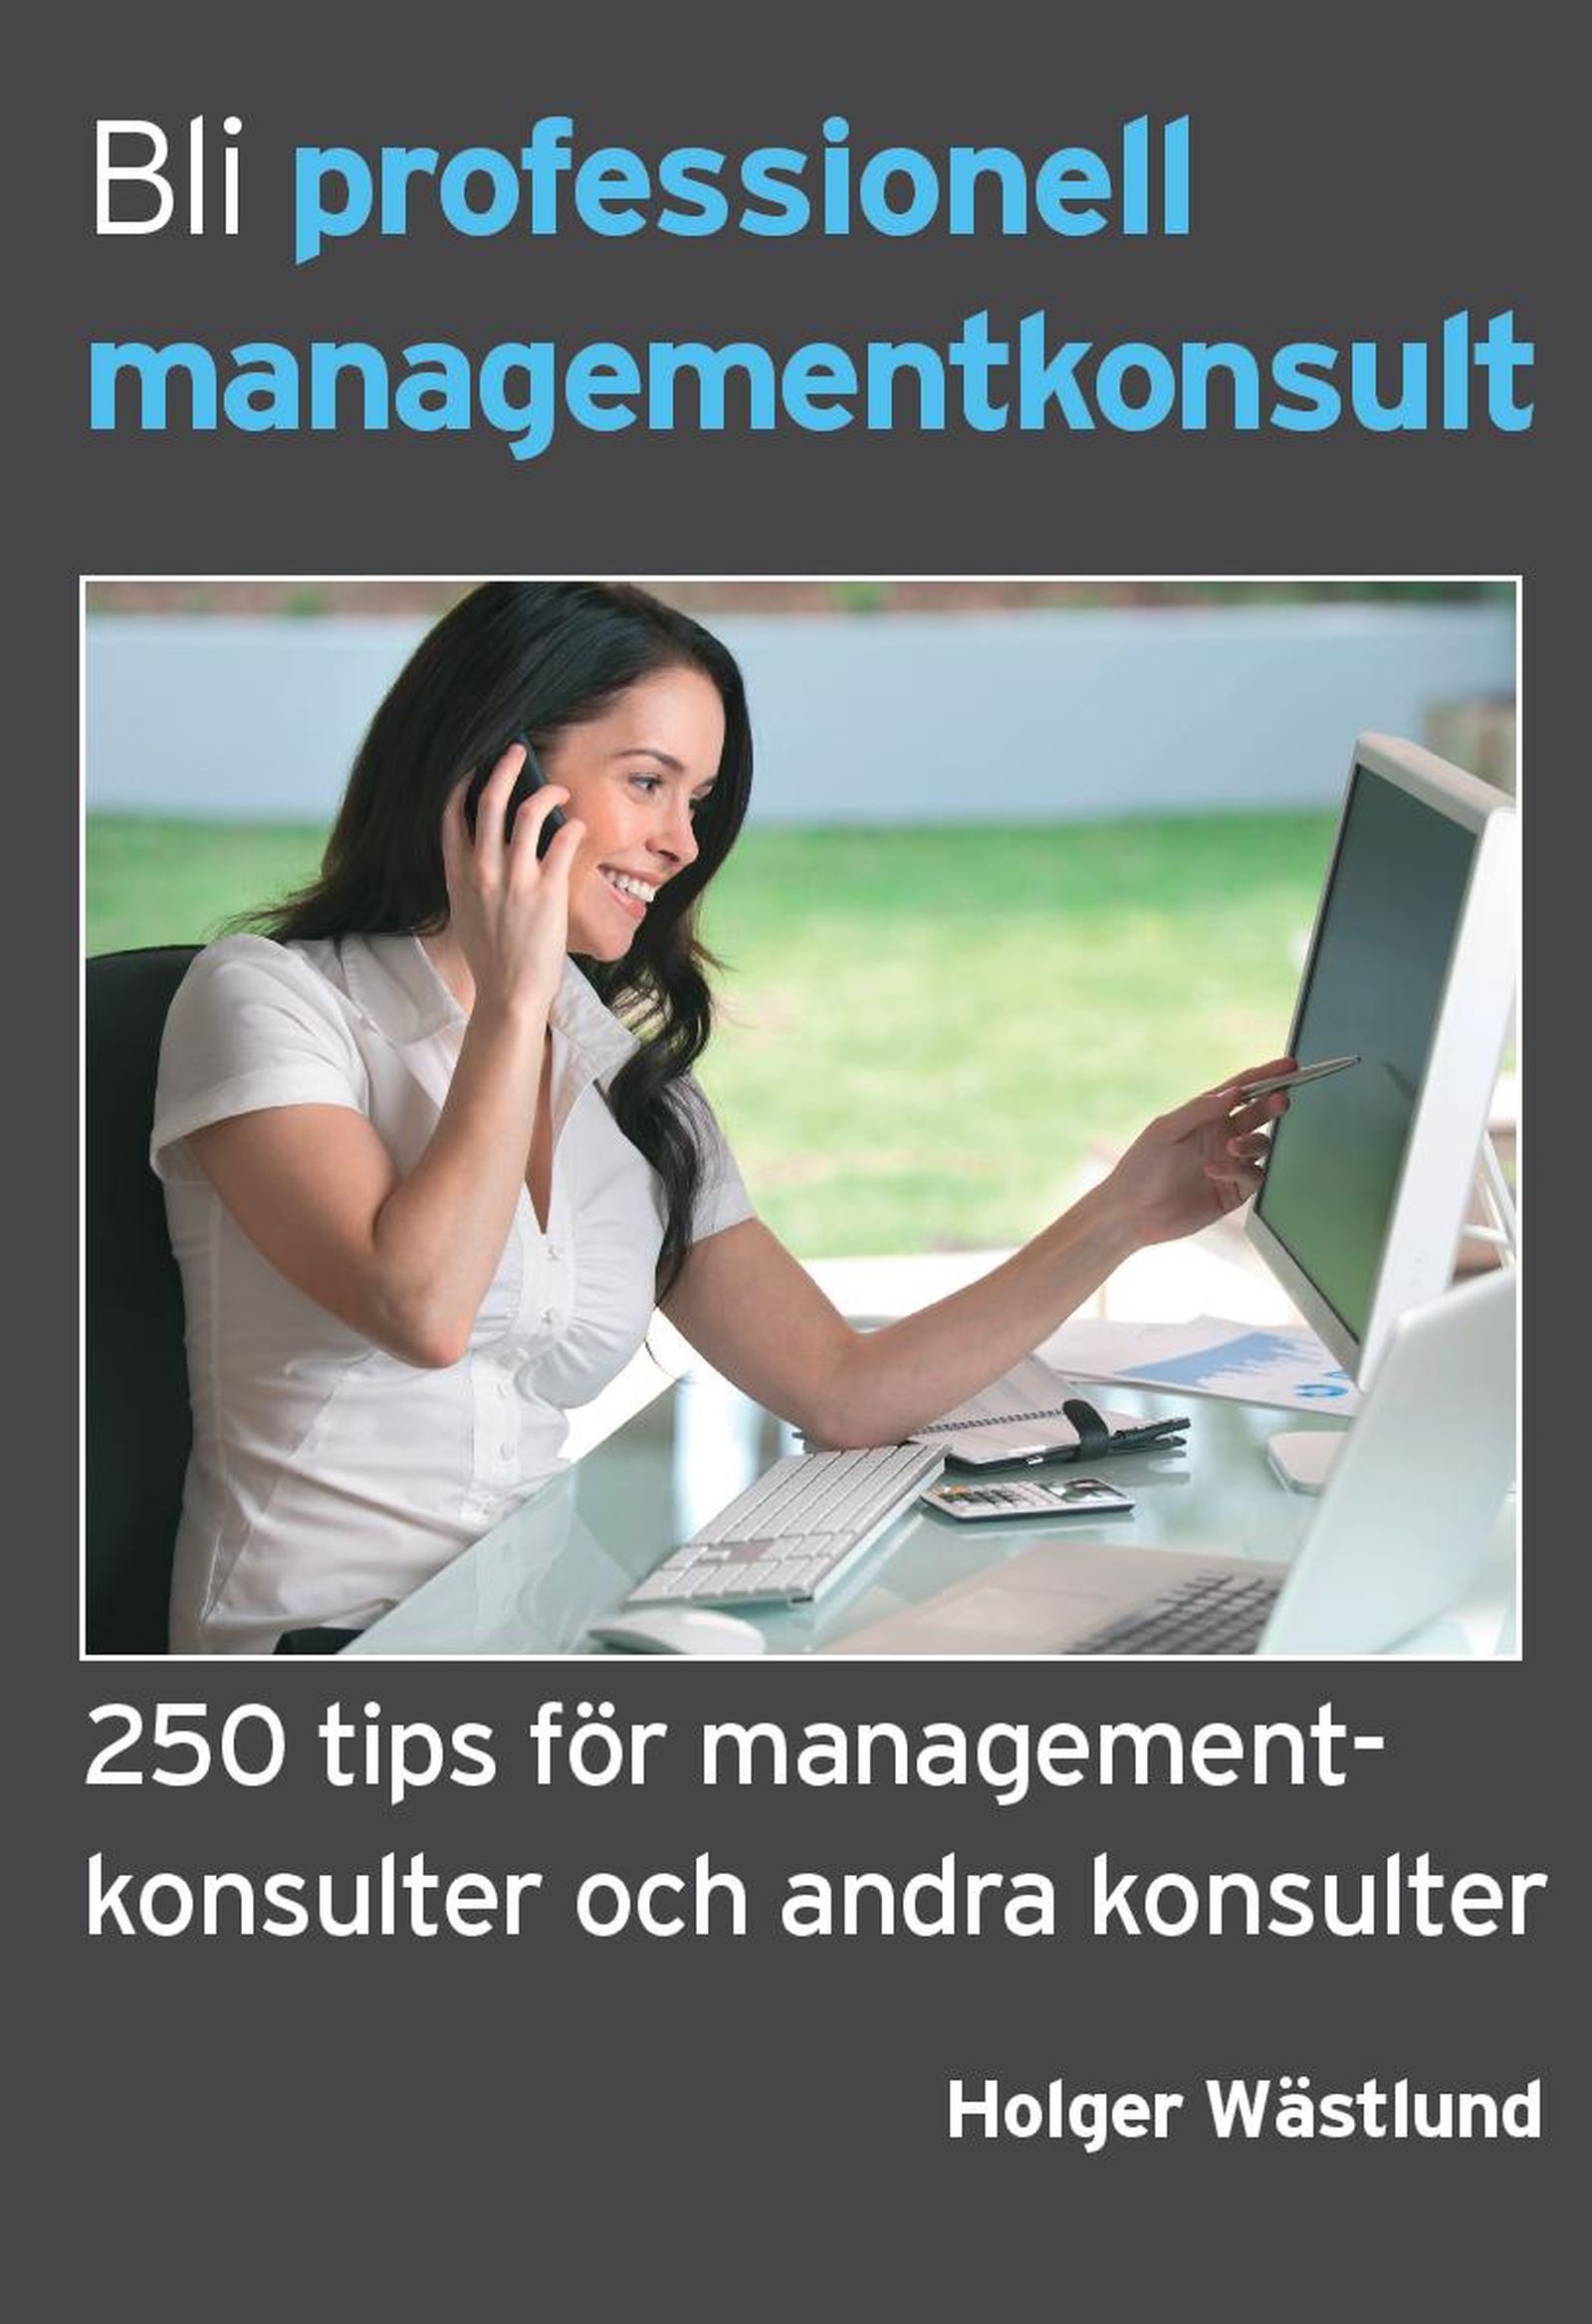 Bli professionell managementkonsult - 250 tips för managementkonsulter och andra konsulter, eBook by Holger Wästlund